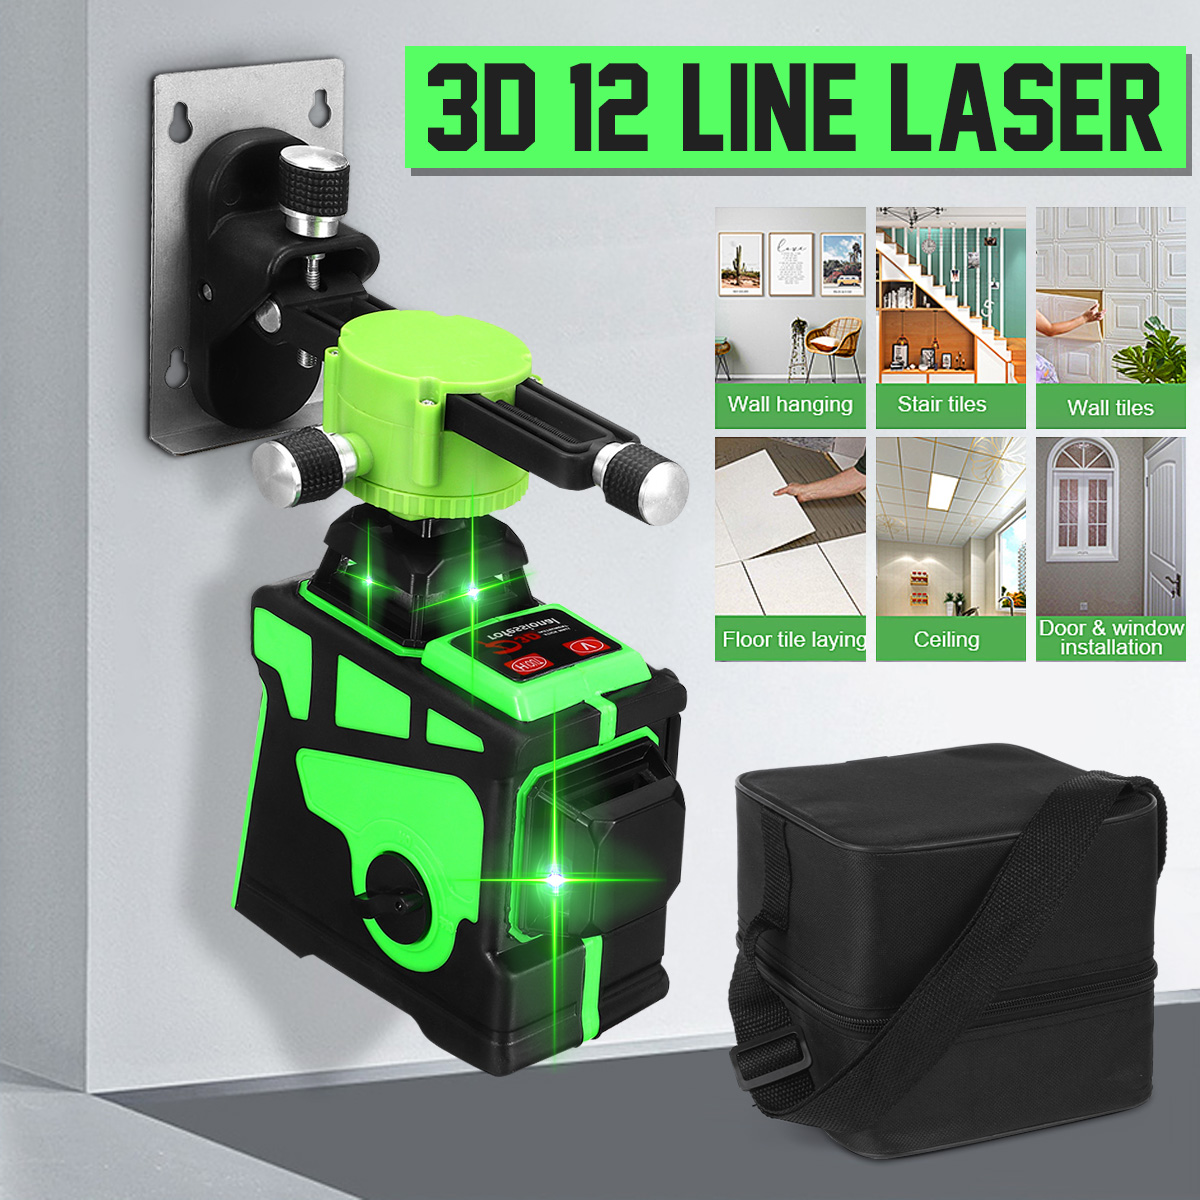 3D-12-Line-Green-Light-Laser-Level-Digital-Self-Leveling-360deg-Rotary-Measure-1665153-1